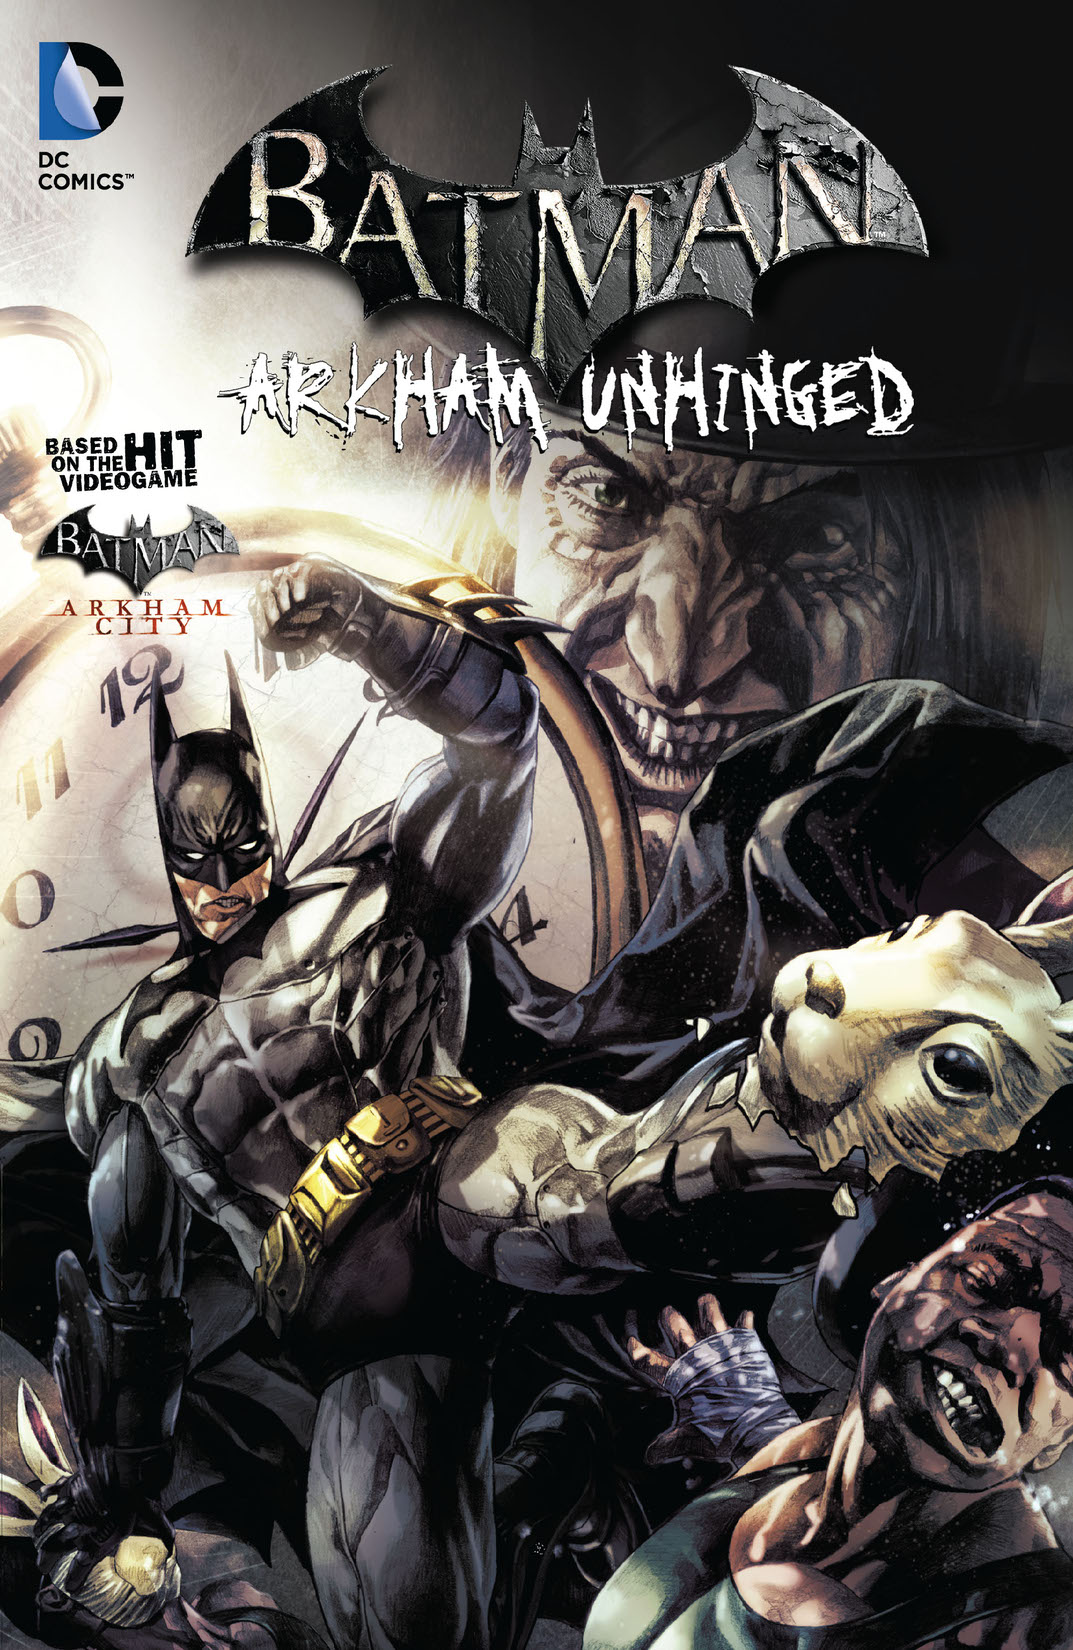 Batman: Arkham Unhinged Vol. 2 preview images